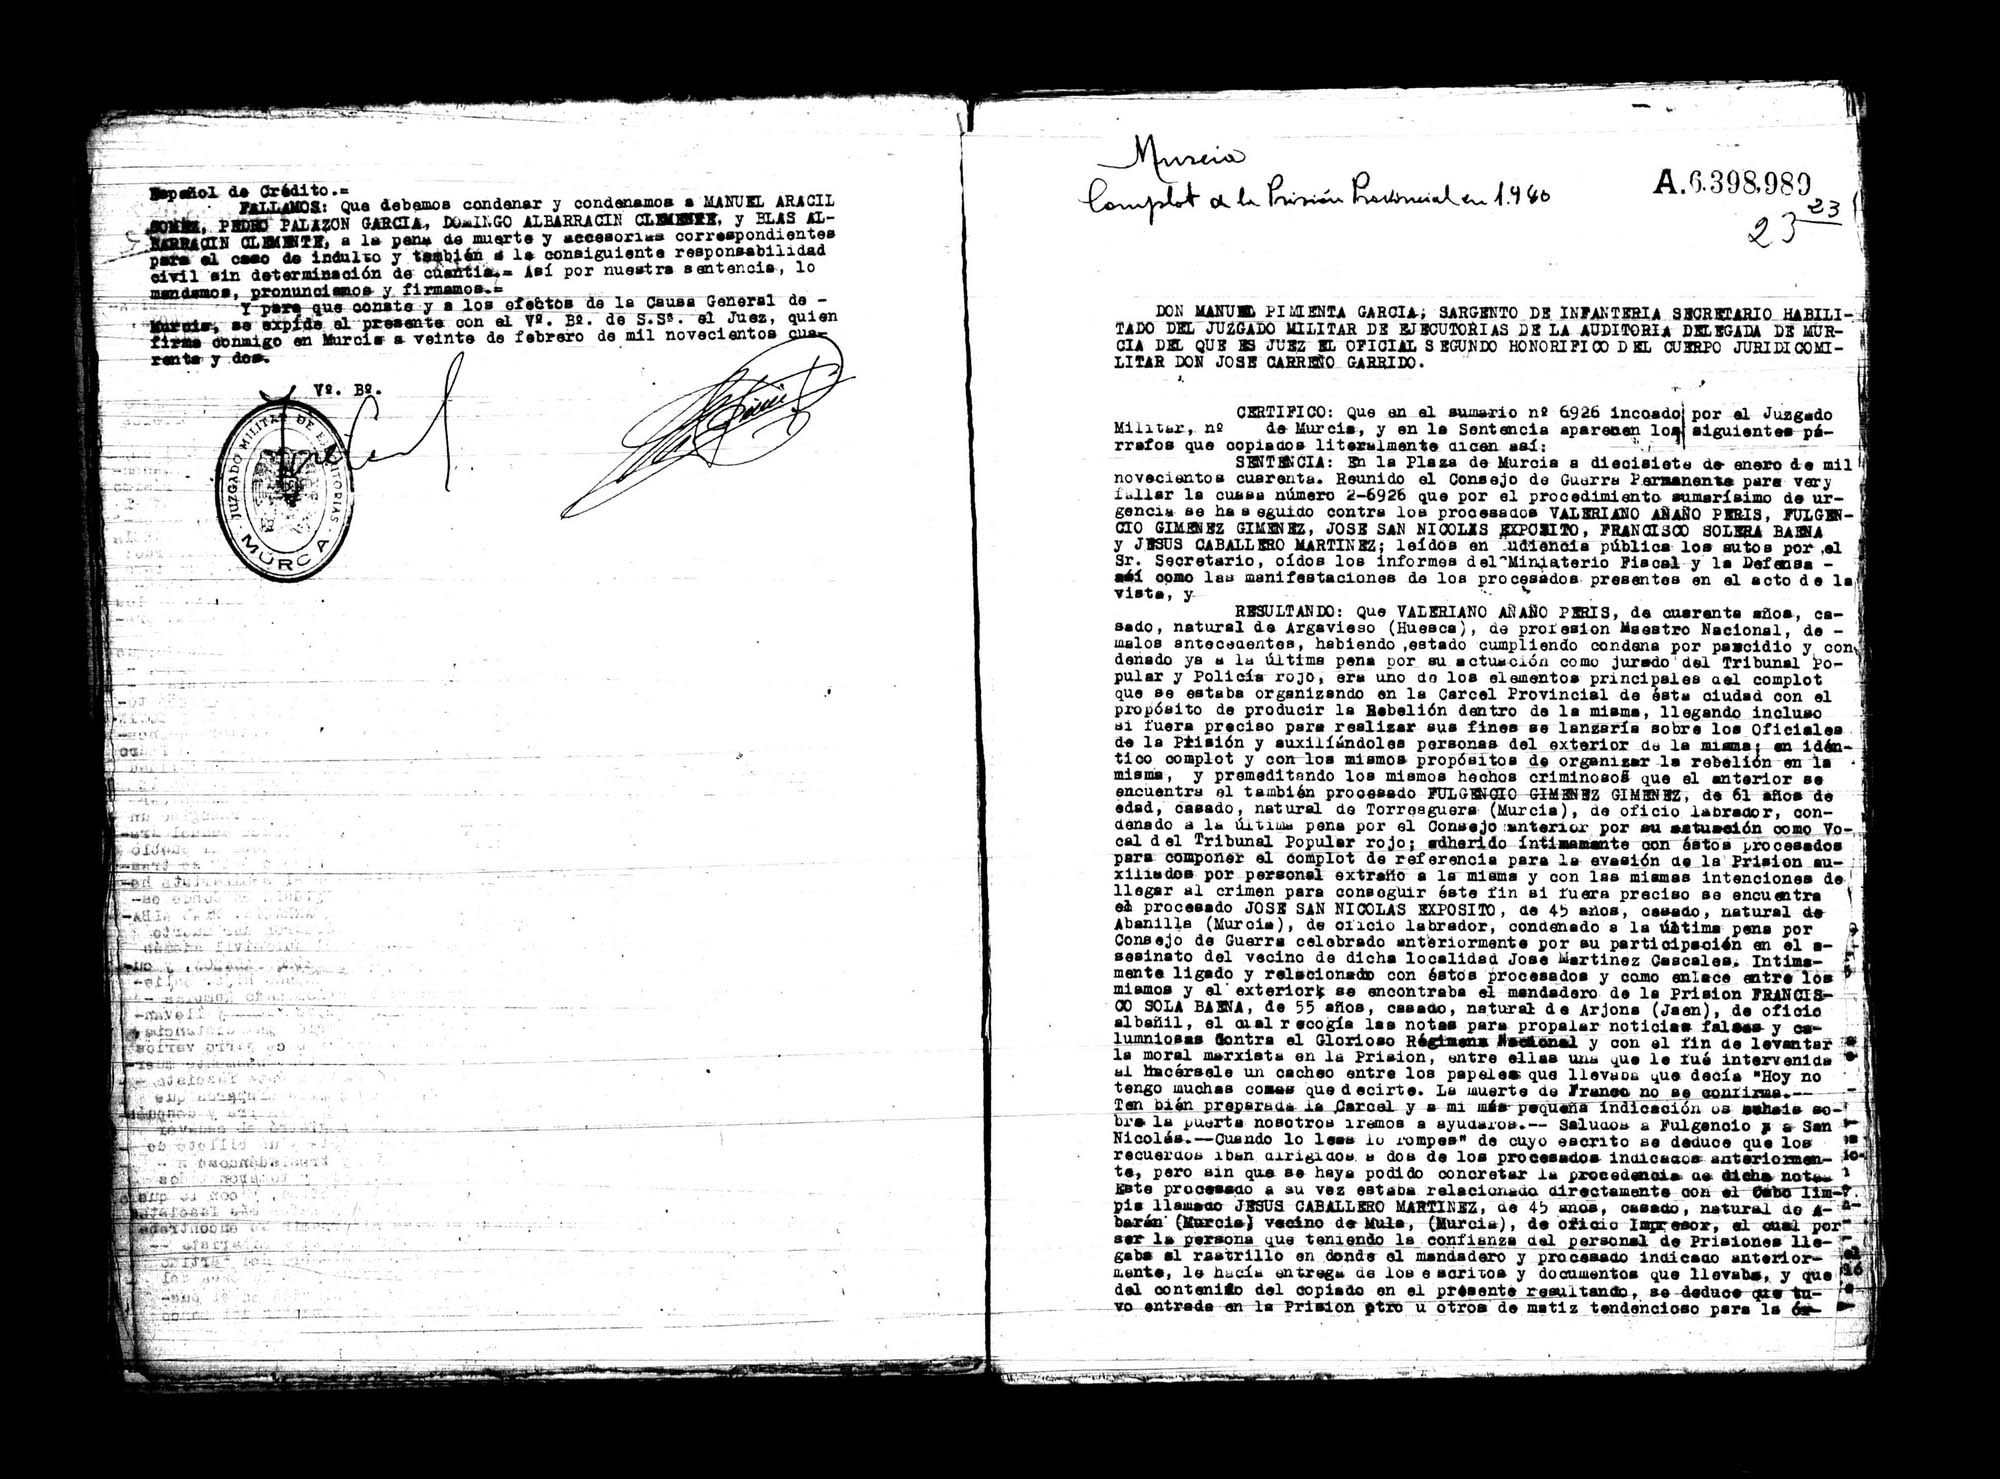 Certificado de la sentencia pronunciada contra Manuel Aracil Gomariz, Pedro Palazón García y Blas Albarracín Clemente, causa 218, el 19 de abril de 1939 en Murcia.